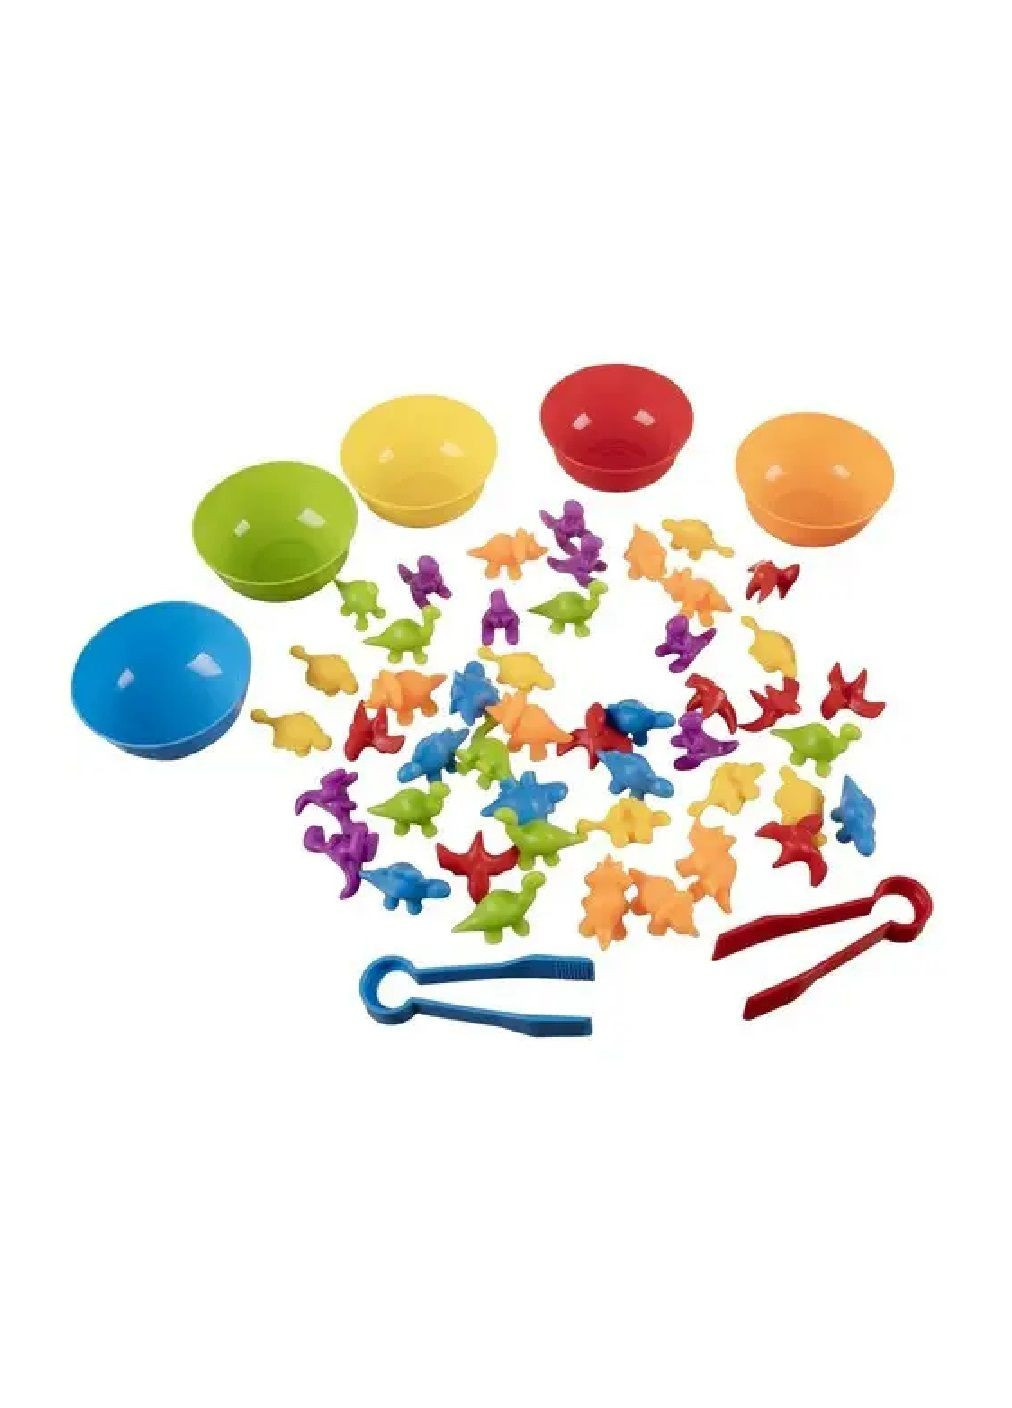 Комплект набор игровой обучающий развивающий для детей малышей счетов цветов фигурок динозавриков (476420-Prob) Unbranded (281326417)